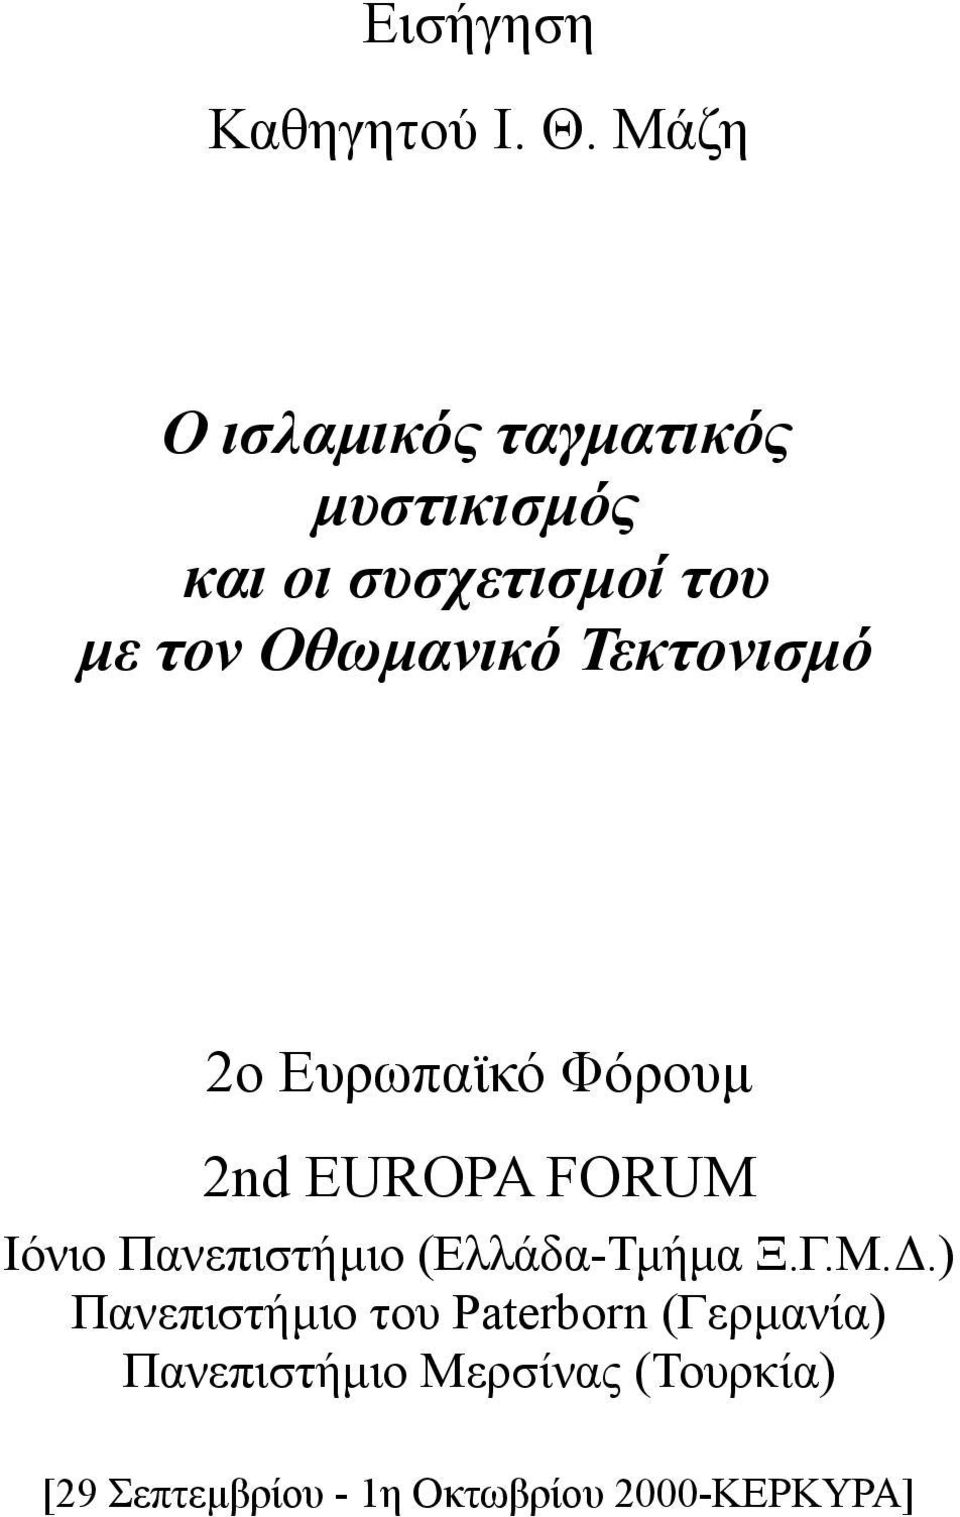 Οθωμανικό Τεκτονισμό 2o Ευρωπαϊκό Φόρουμ 2nd EUROPA FORUM Ιόνιο Πανεπιστήμιο